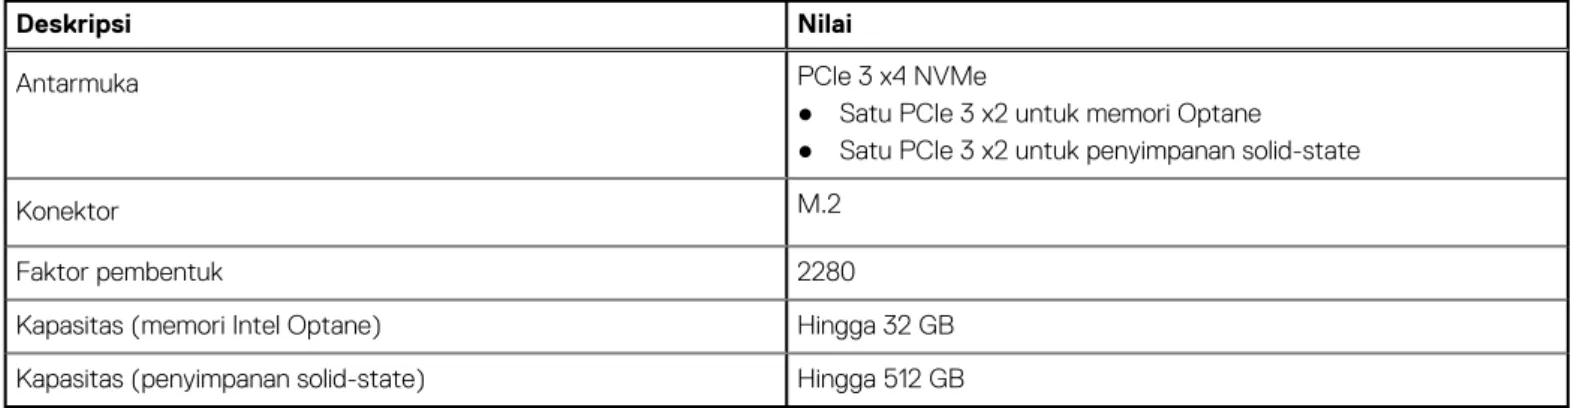 Tabel berikut mencantumkan informasi kartu media yang didukung oleh Dell G3 15 3500 Anda.